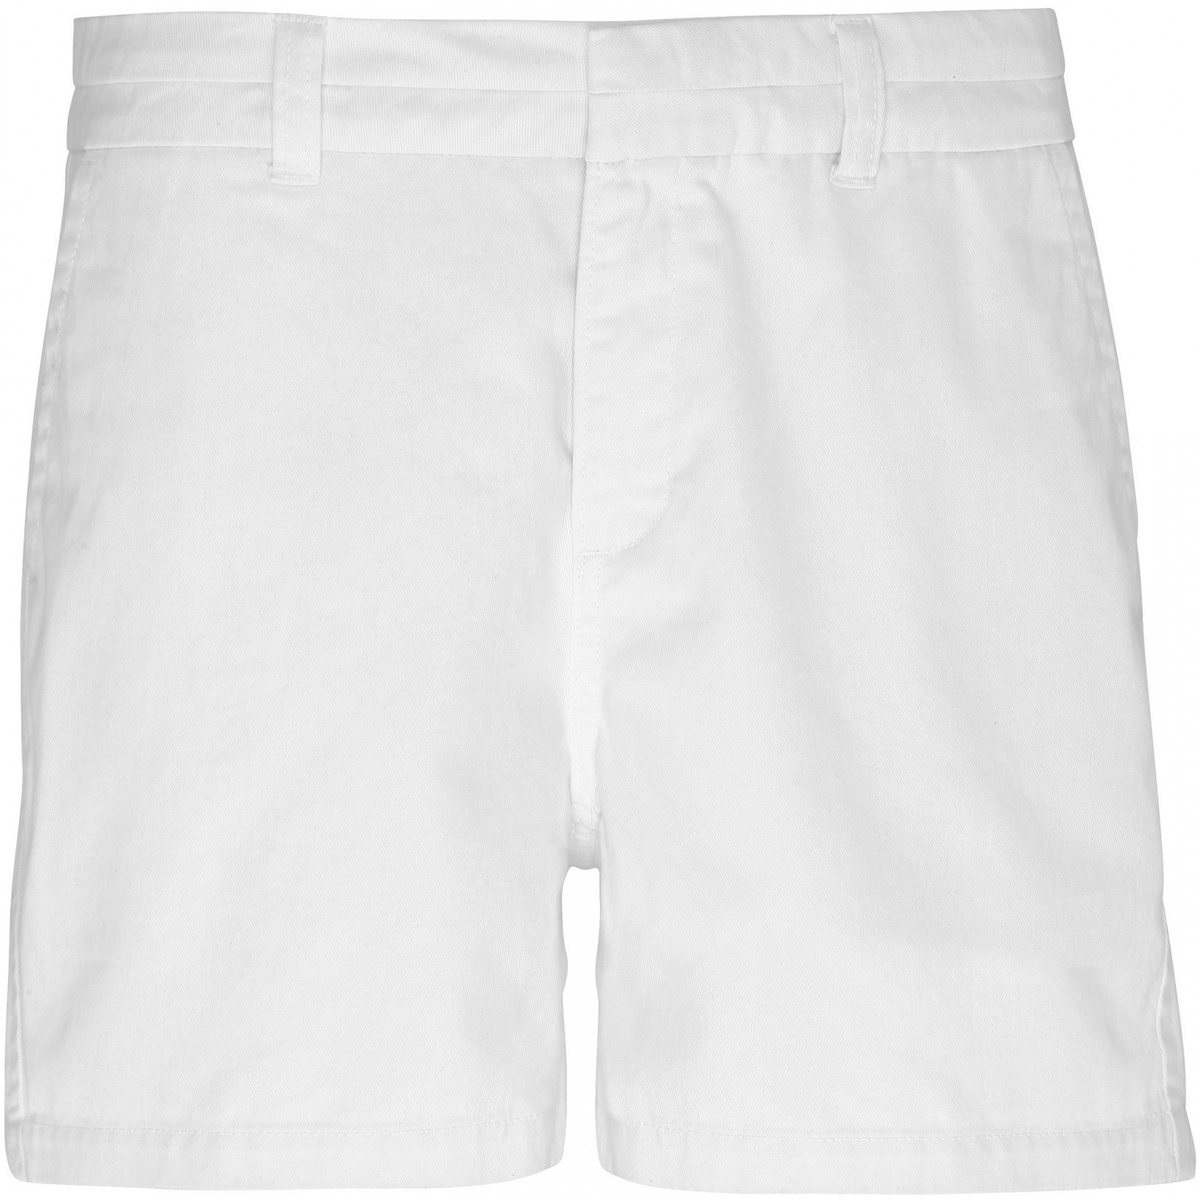 Vêtements Femme Shorts / Bermudas Asquith & Fox AQ061 Blanc